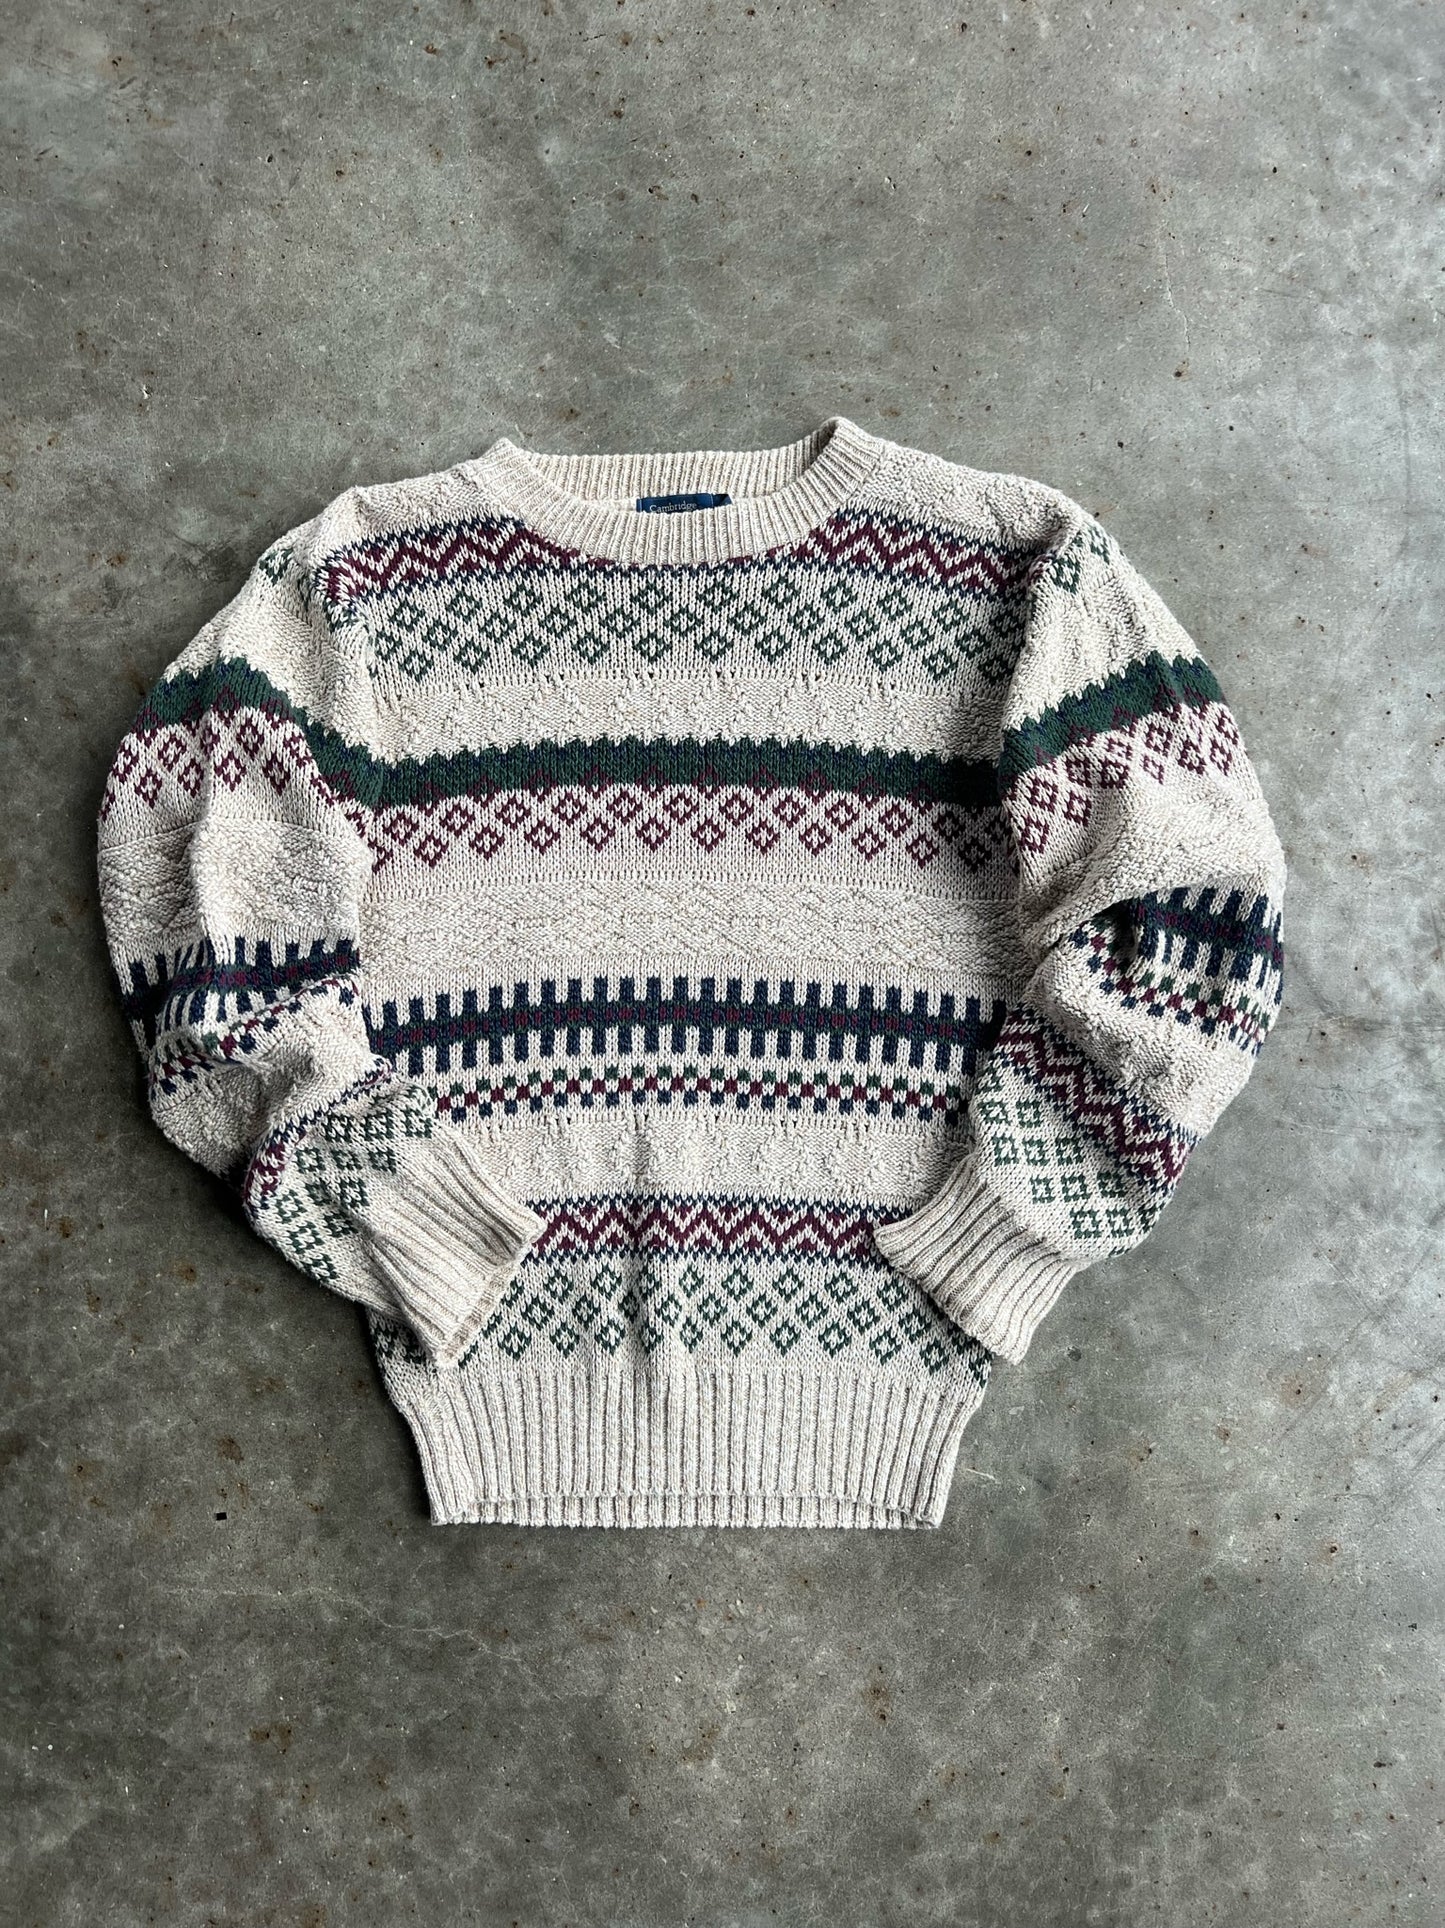 Vintage Cambridge Classics Sweater - S